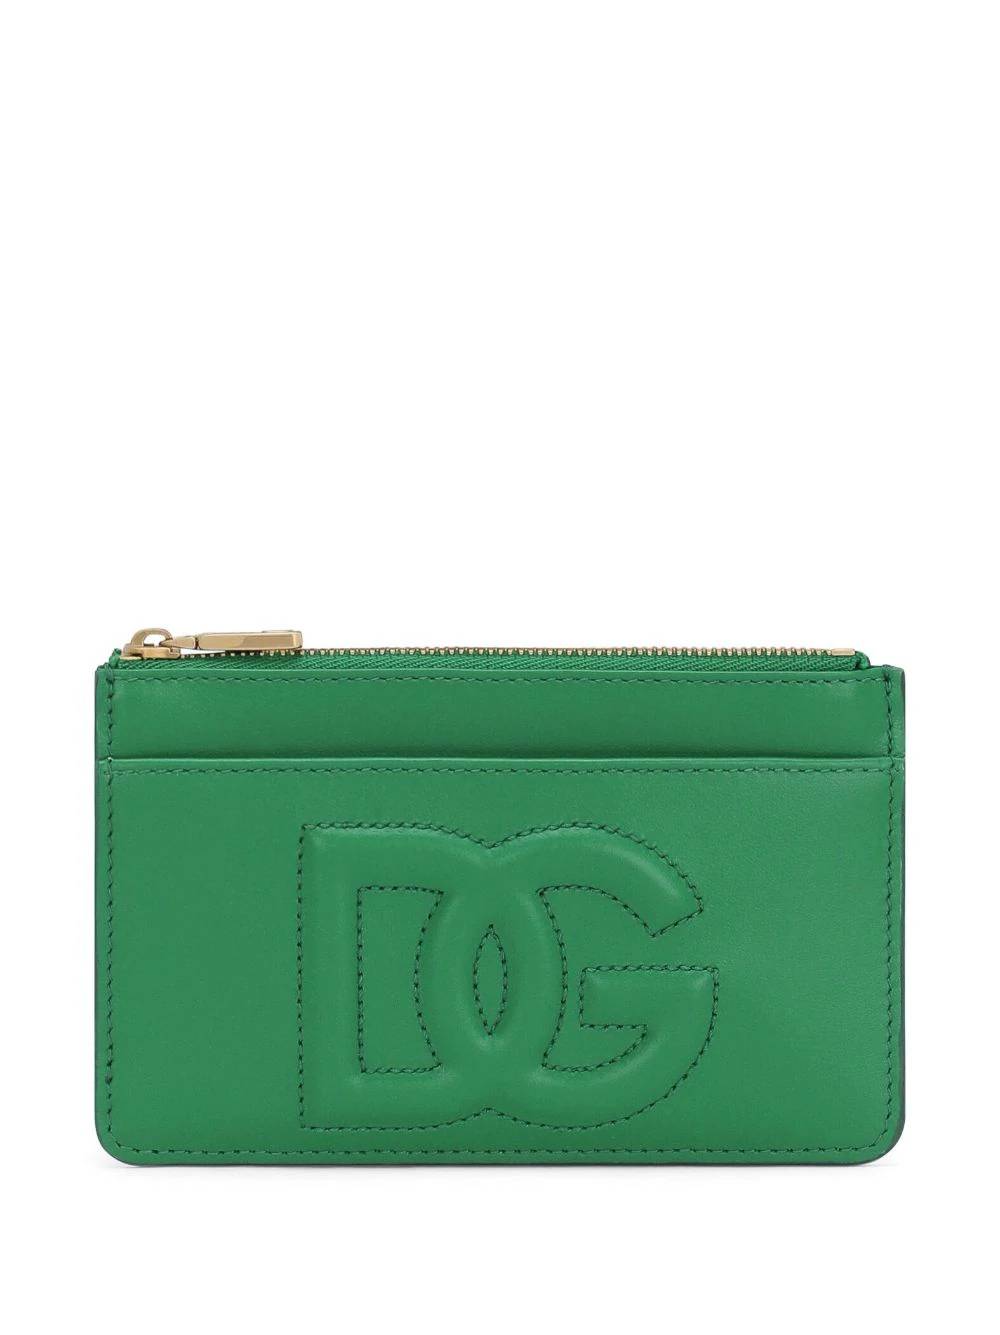 Dolce & Gabbana Bi1261 Woman Green Wallet